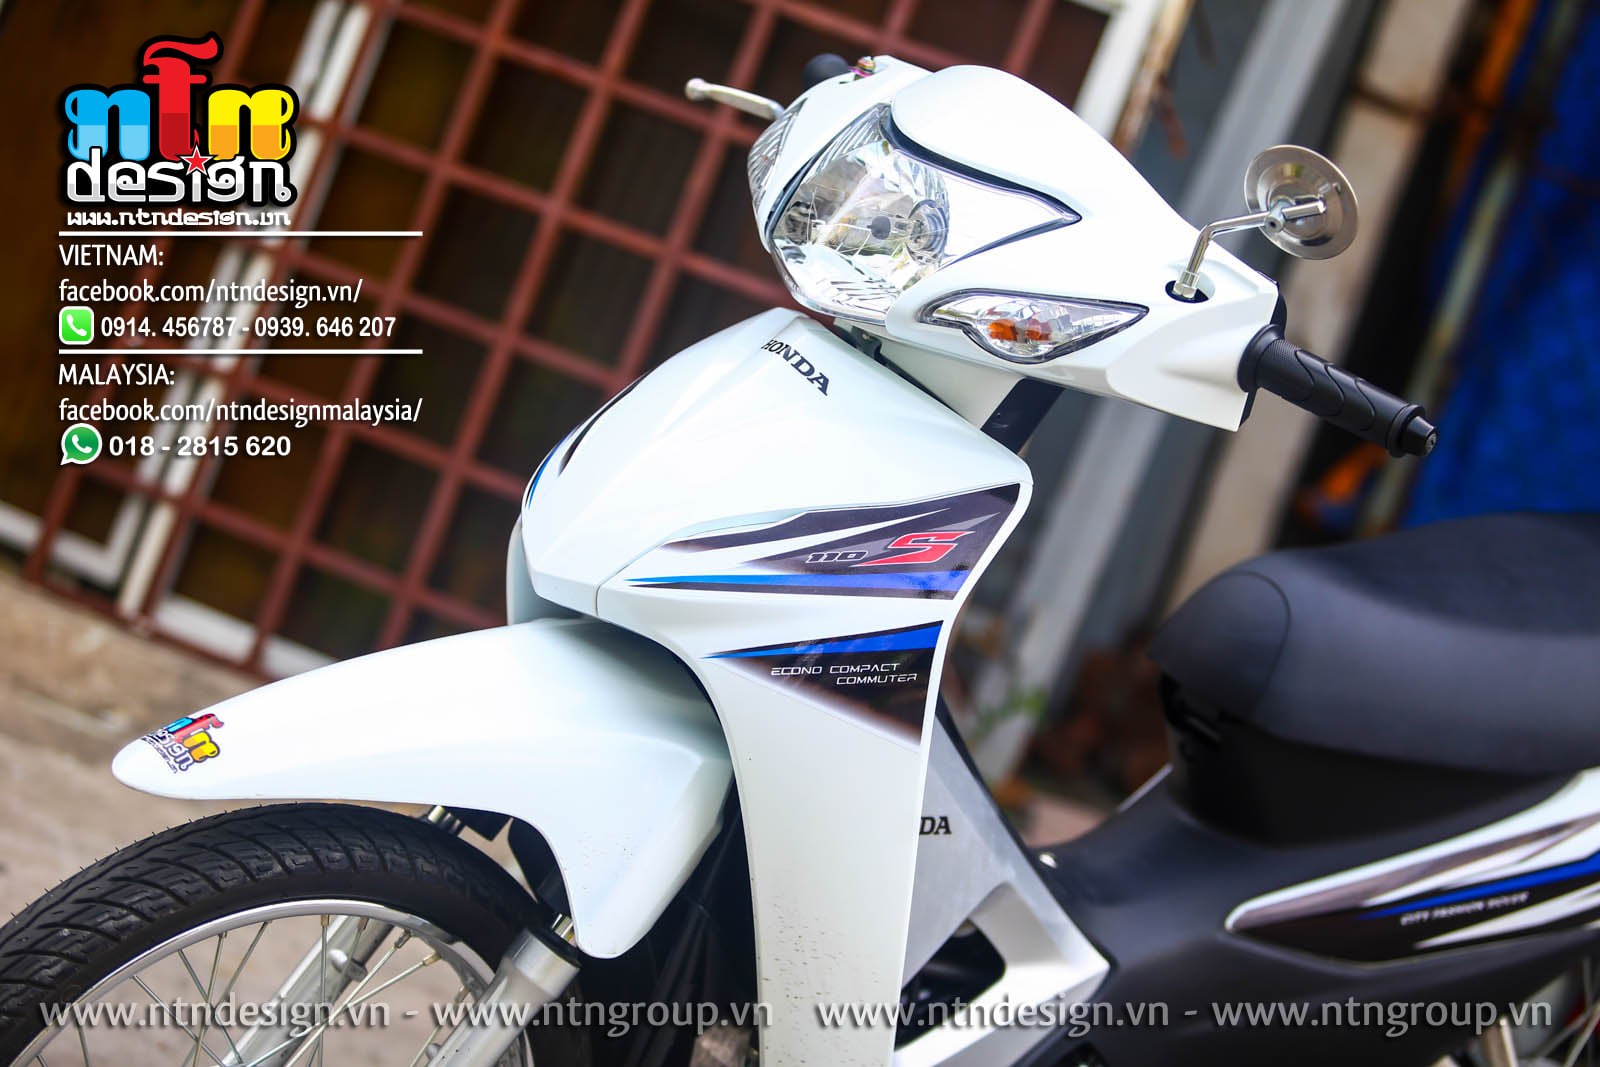 Tem trùm wave xanh trắng s110 độ dán phủ bộ team decal cho xe máy rẻ đẹp   Shopee Việt Nam